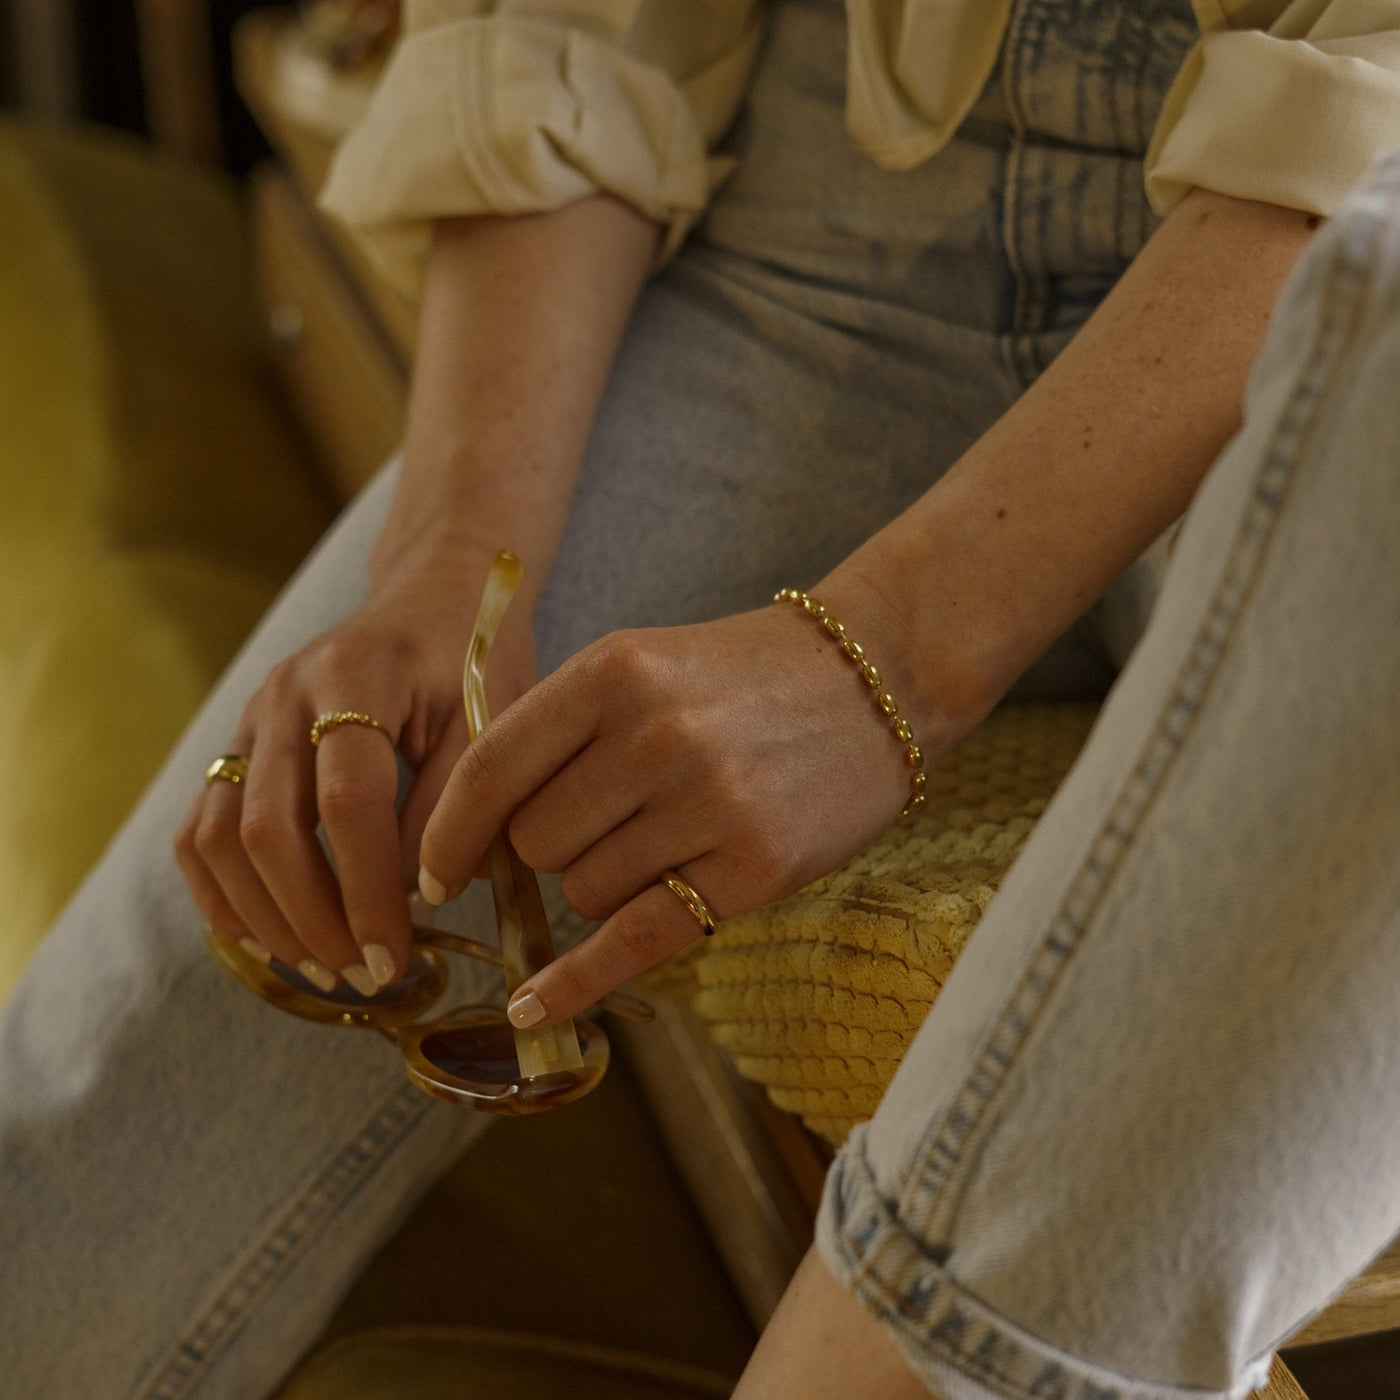 OLIVIA BOLD – Armband in Gold, Silber oder Roségold